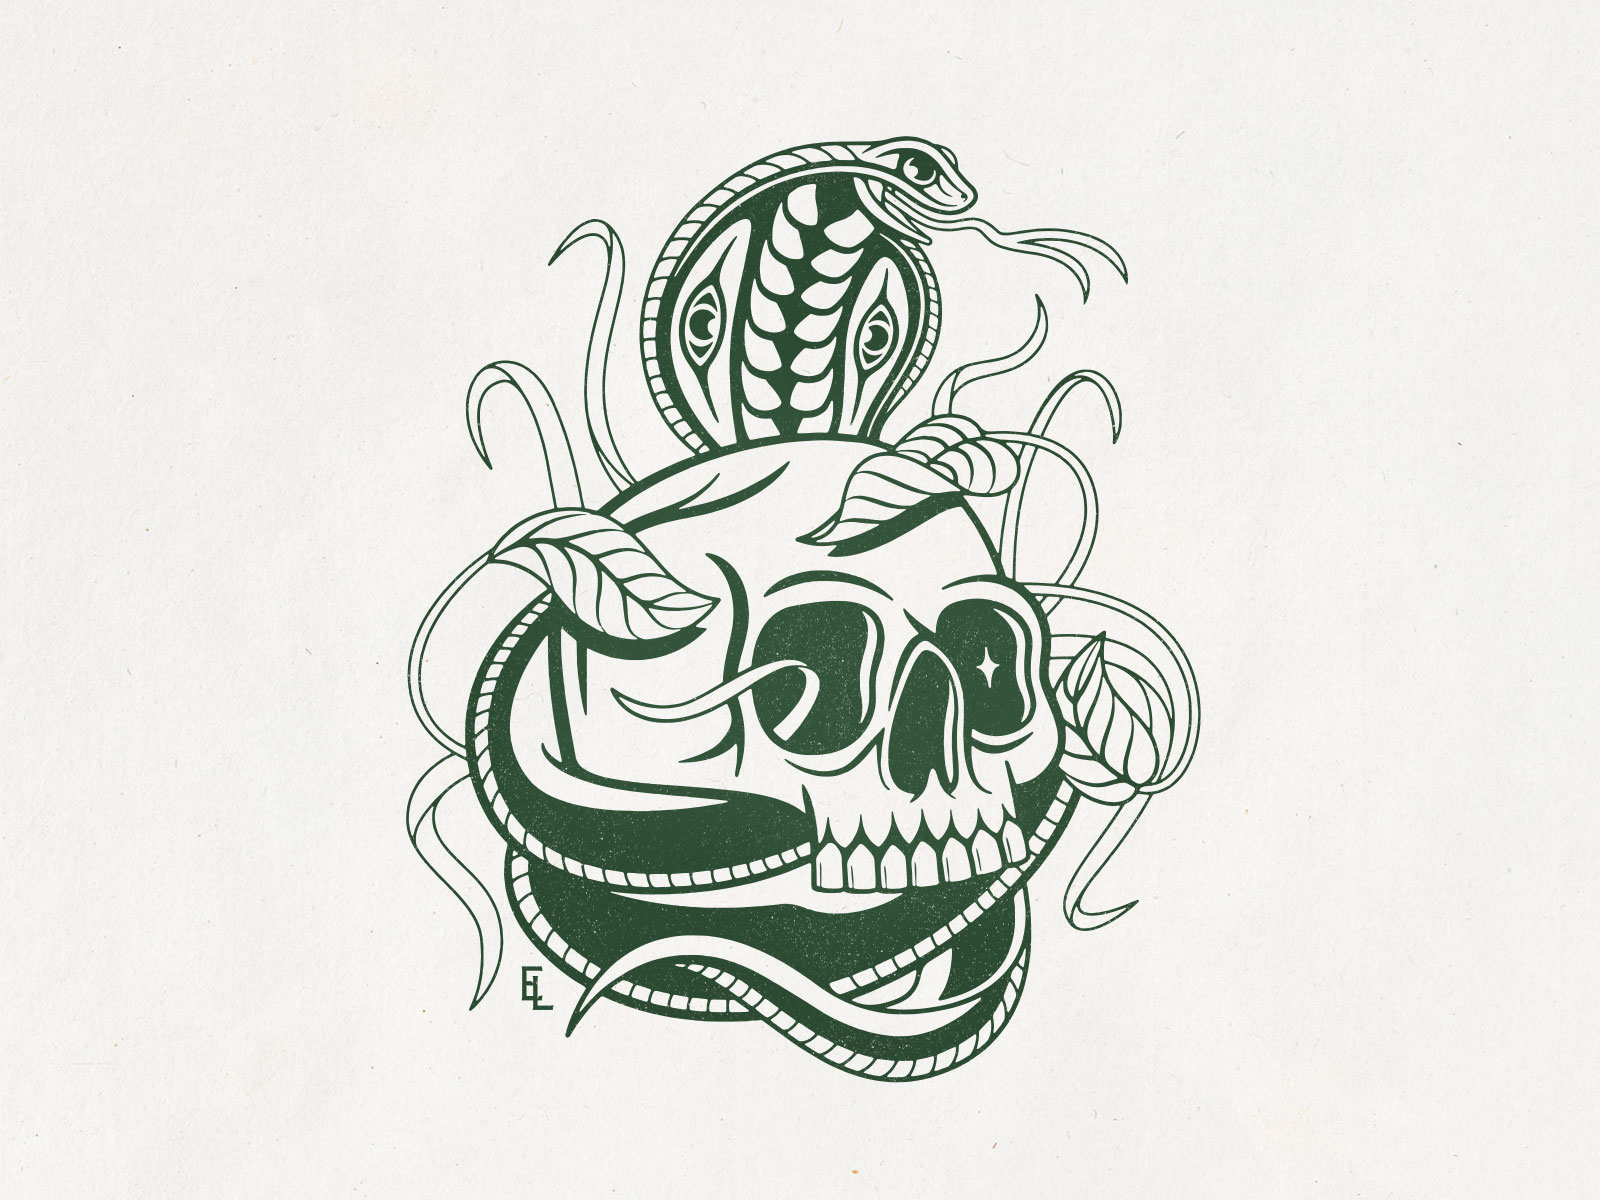 Cobra / Skull Variant by Eric Lee on Dribbble